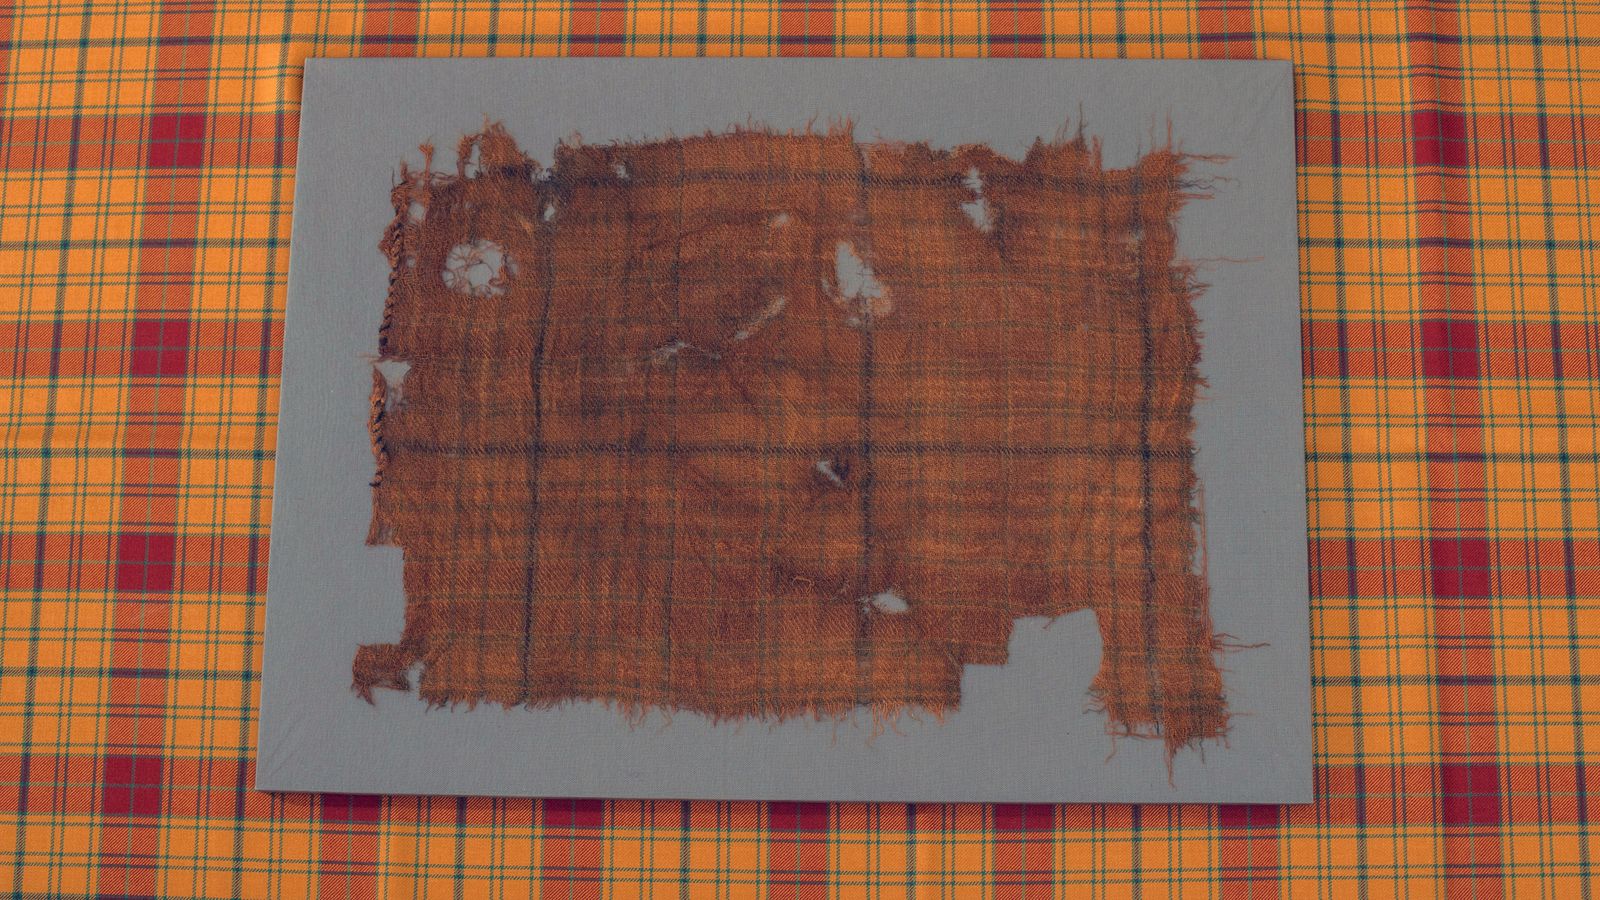 Glen Affric Tartan датира от 1500-1600 г. сл. н. е.